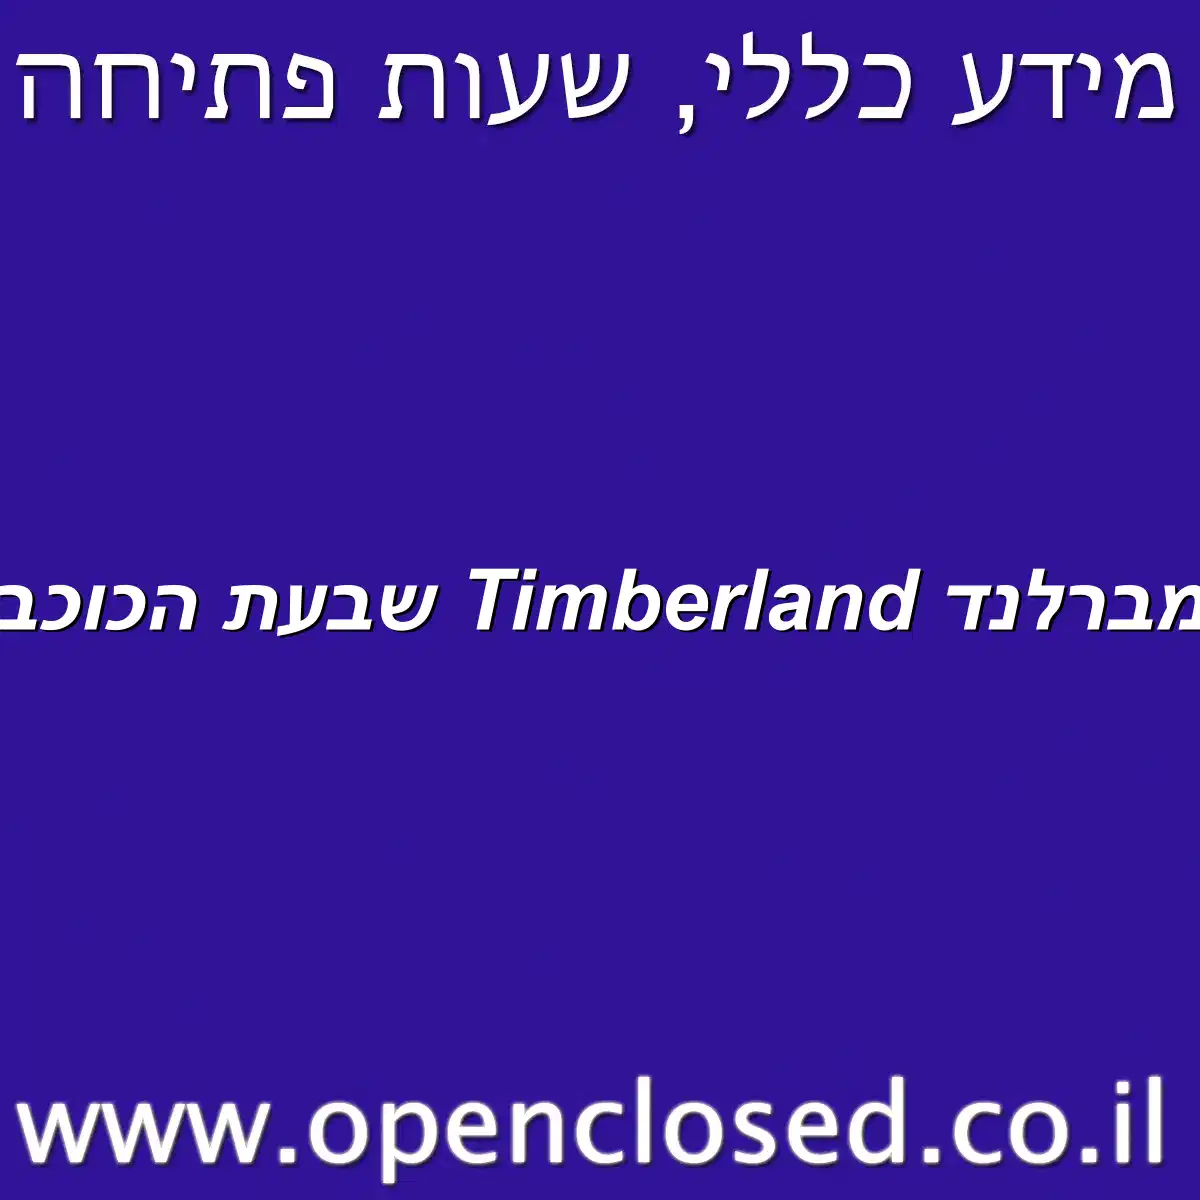 טימברלנד Timberland שבעת הכוכבים